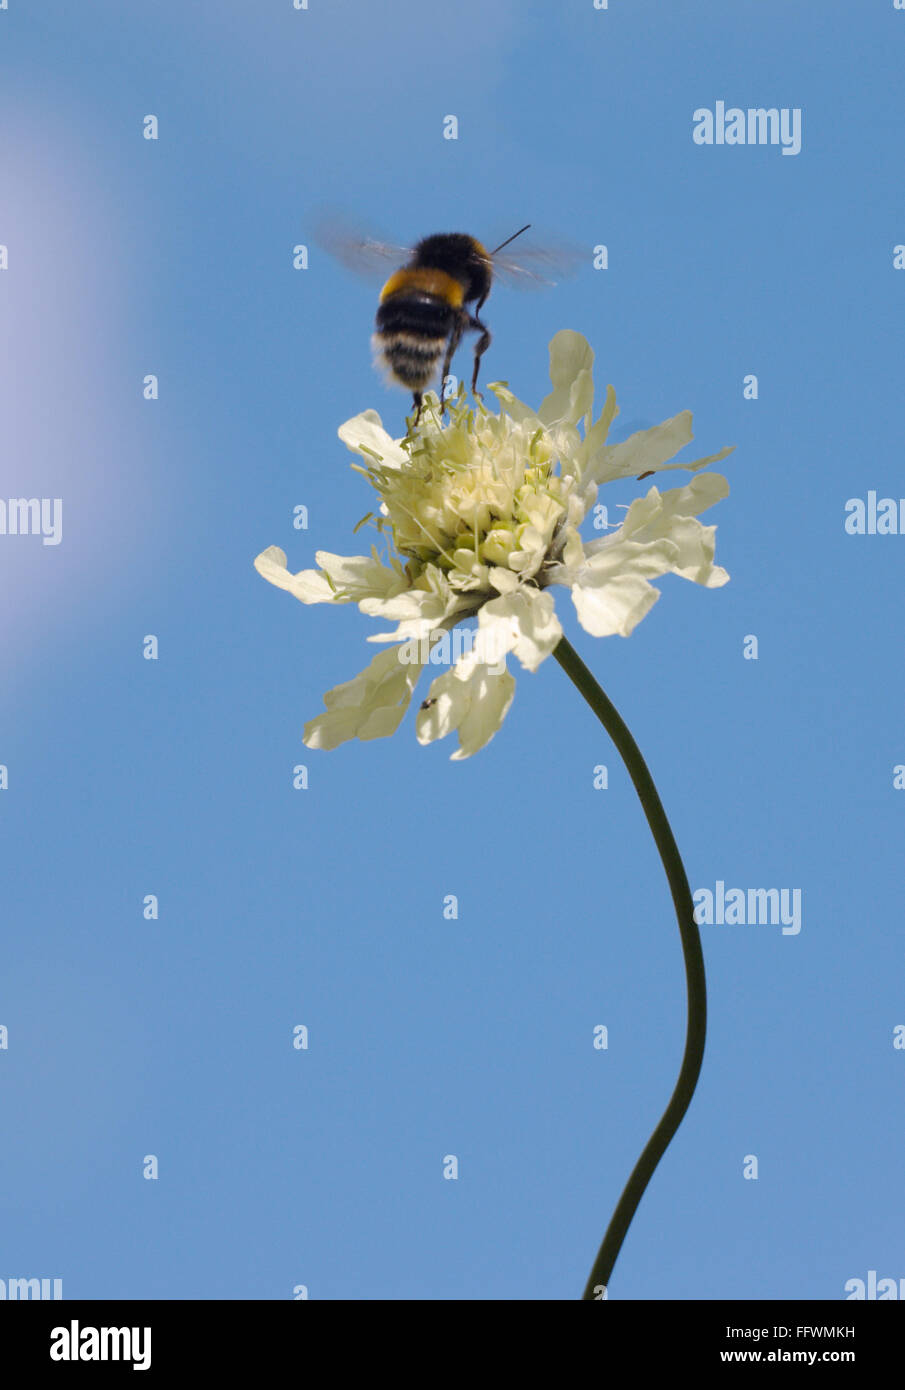 Ape singola nel mezzo di un salto da un alto fiore bianco nel cielo blu Foto Stock